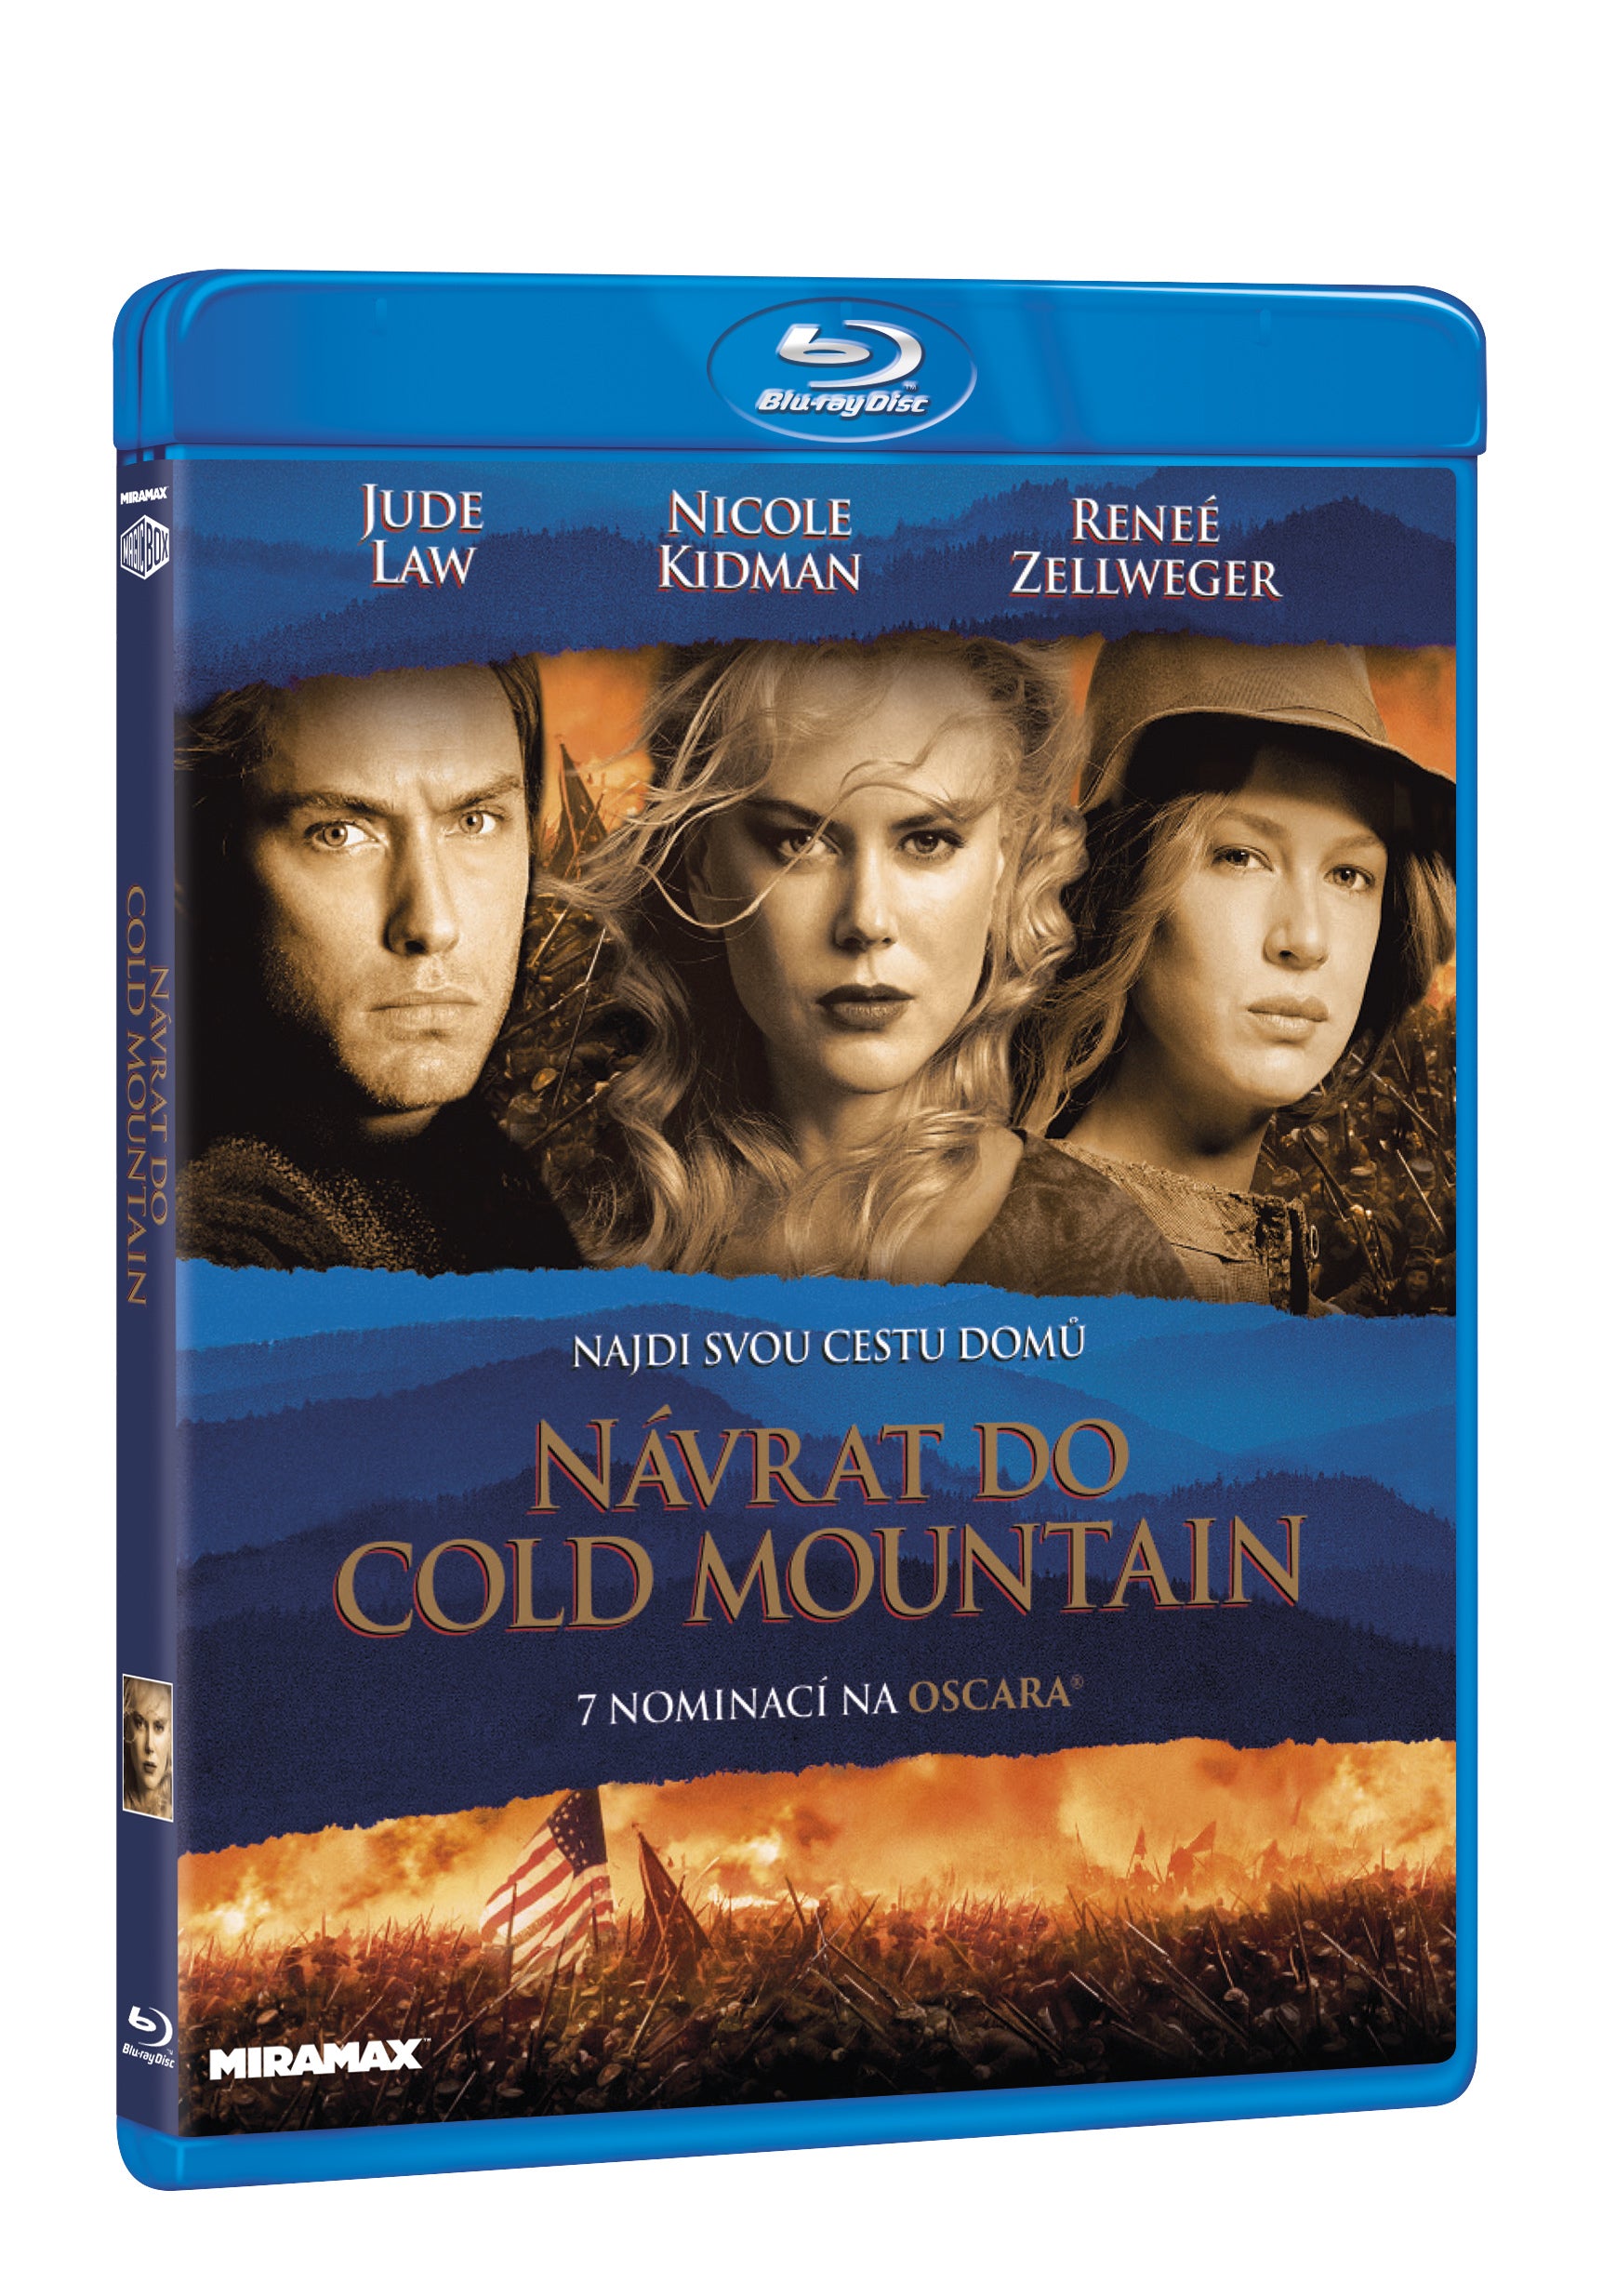 Navrat do Cold Mountain BD / Cold Mountain - Czech version